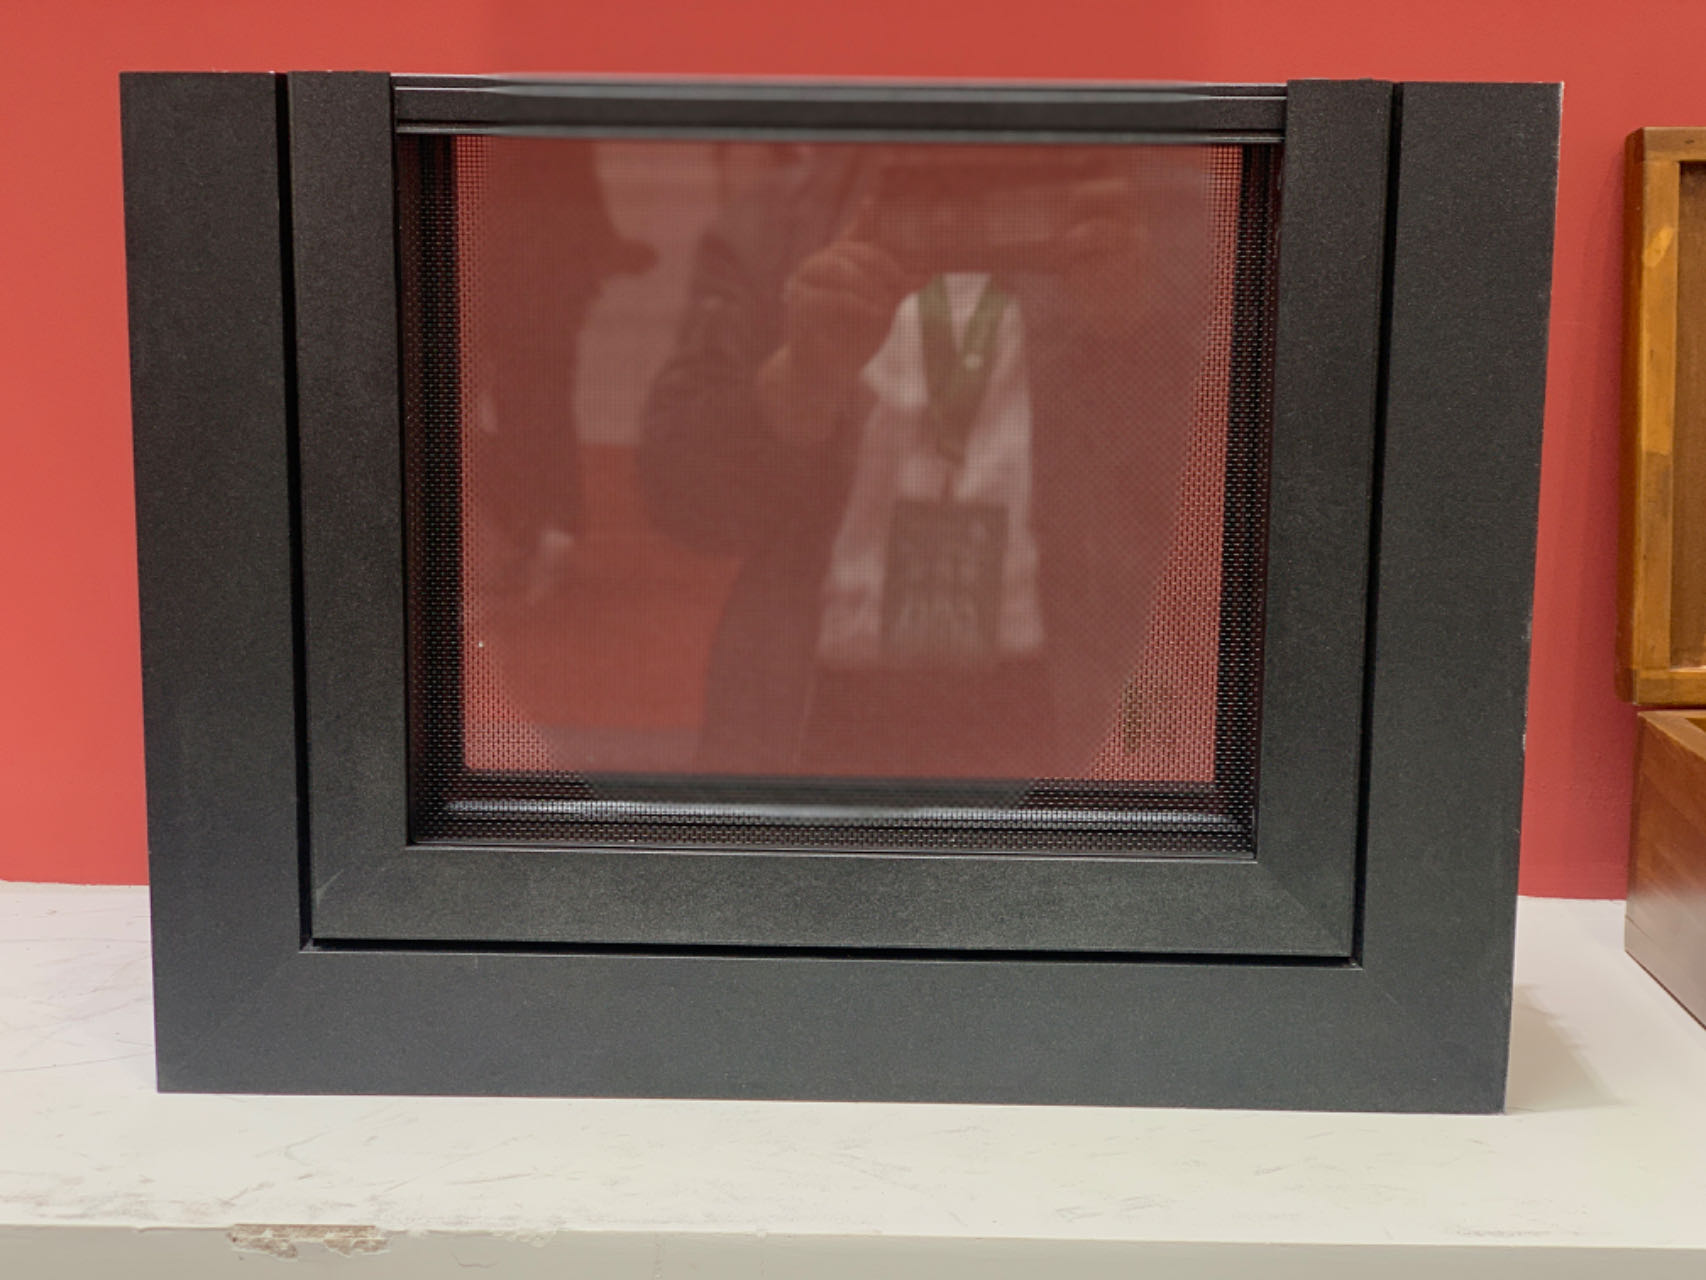 天津市88系列无缝焊接厂家耐腐蚀好 铝包木78系列窗  无缝焊接 洛克门窗  88系列无缝焊接系统窗